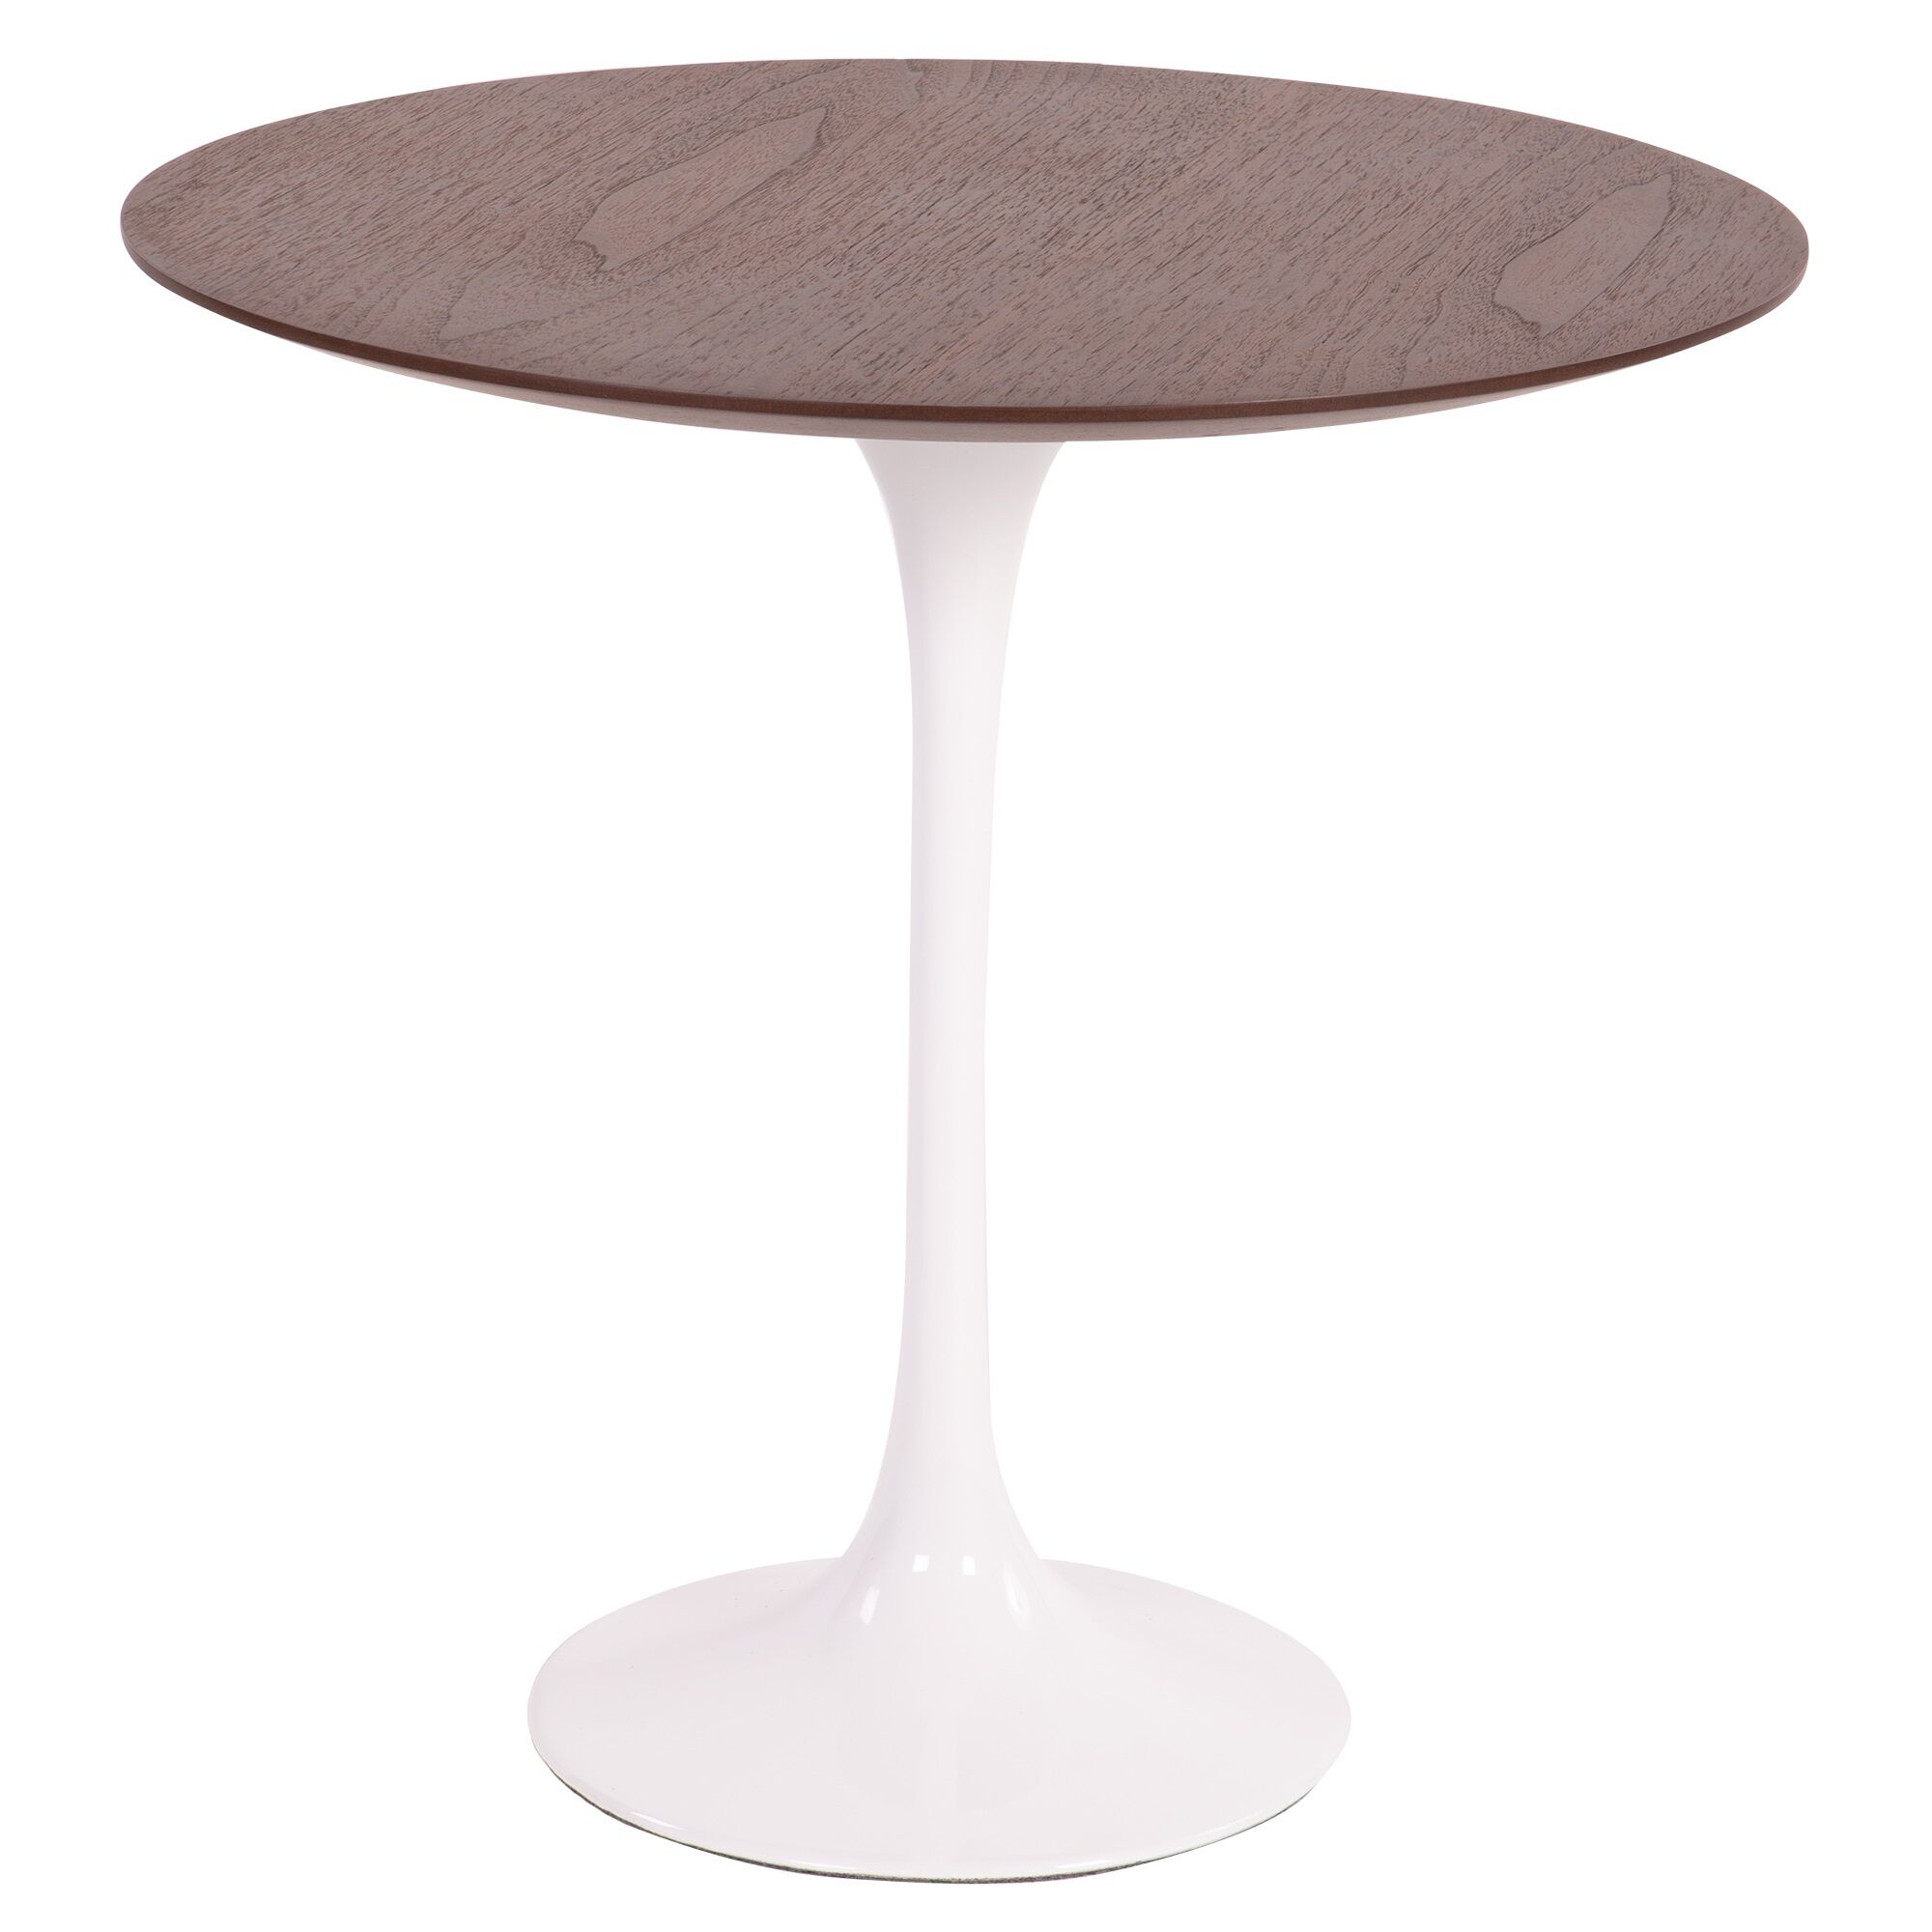 Tavolino Eero Saarinen Tulip Side table bianco Top noce Base